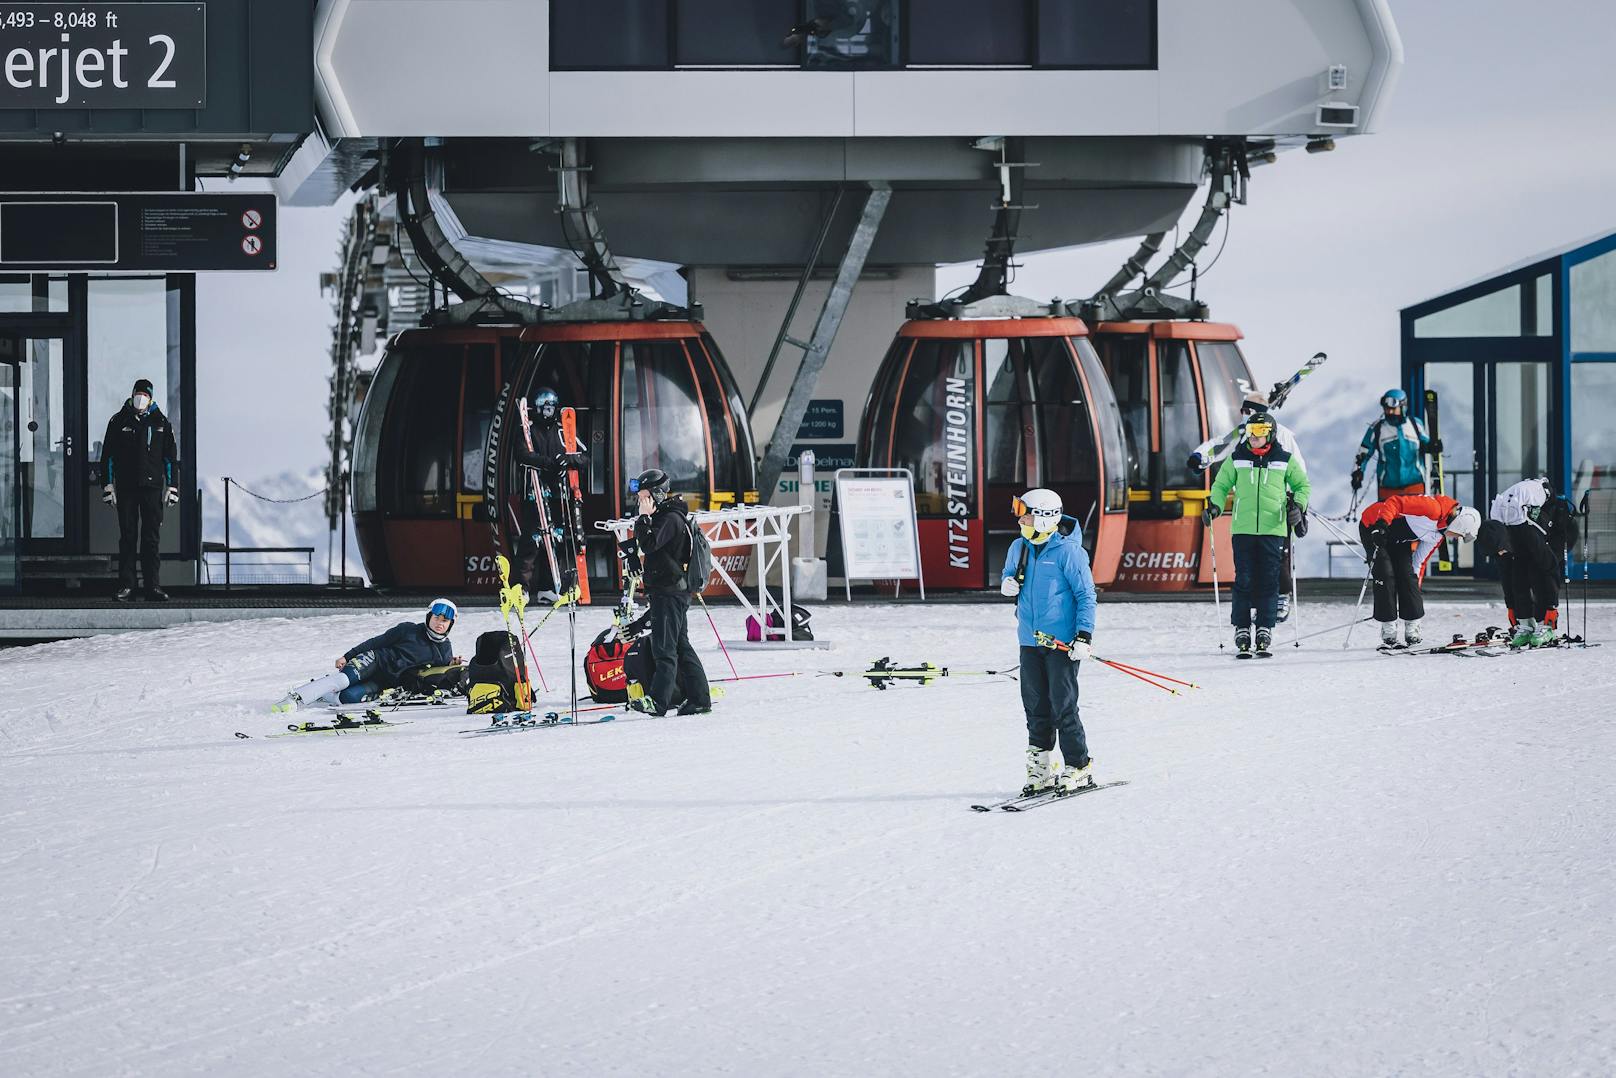 Mitten im Sommer – Skireisen noch nie so früh gebucht